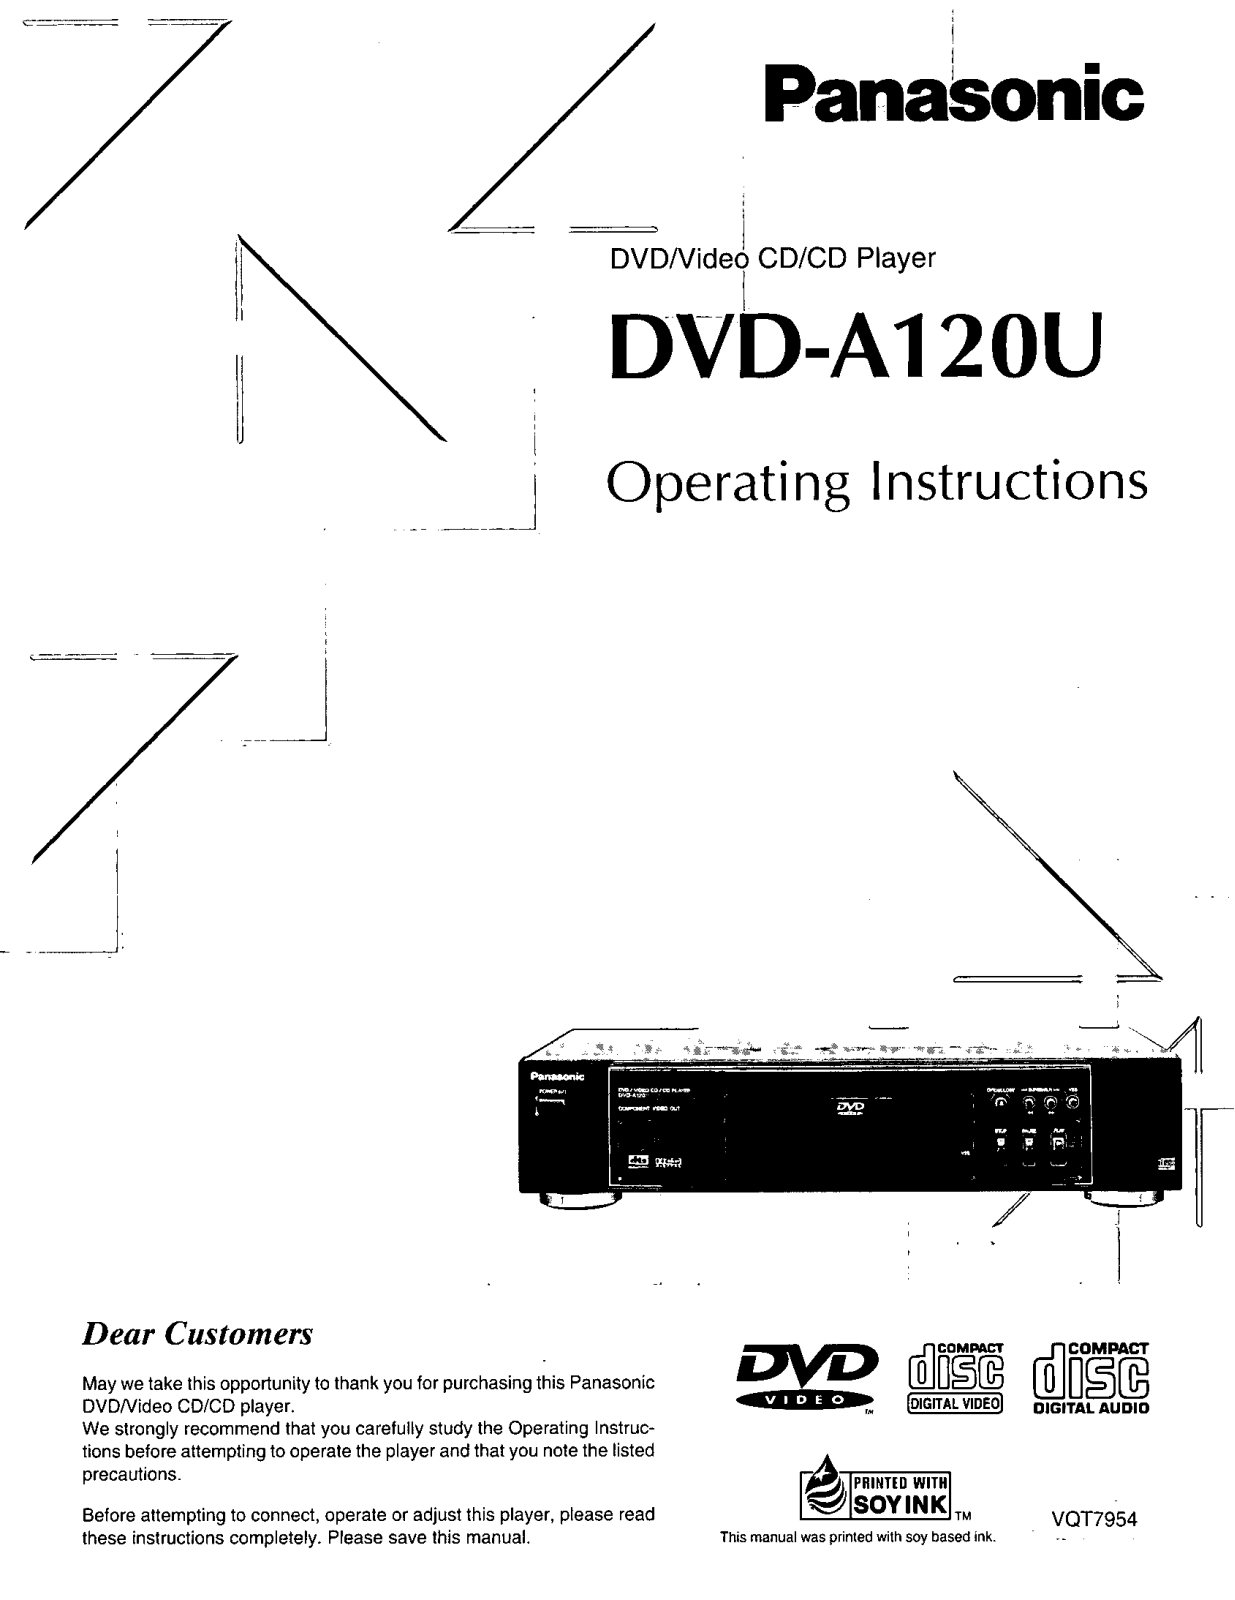 Panasonic DVD-A120U Operating Instruction